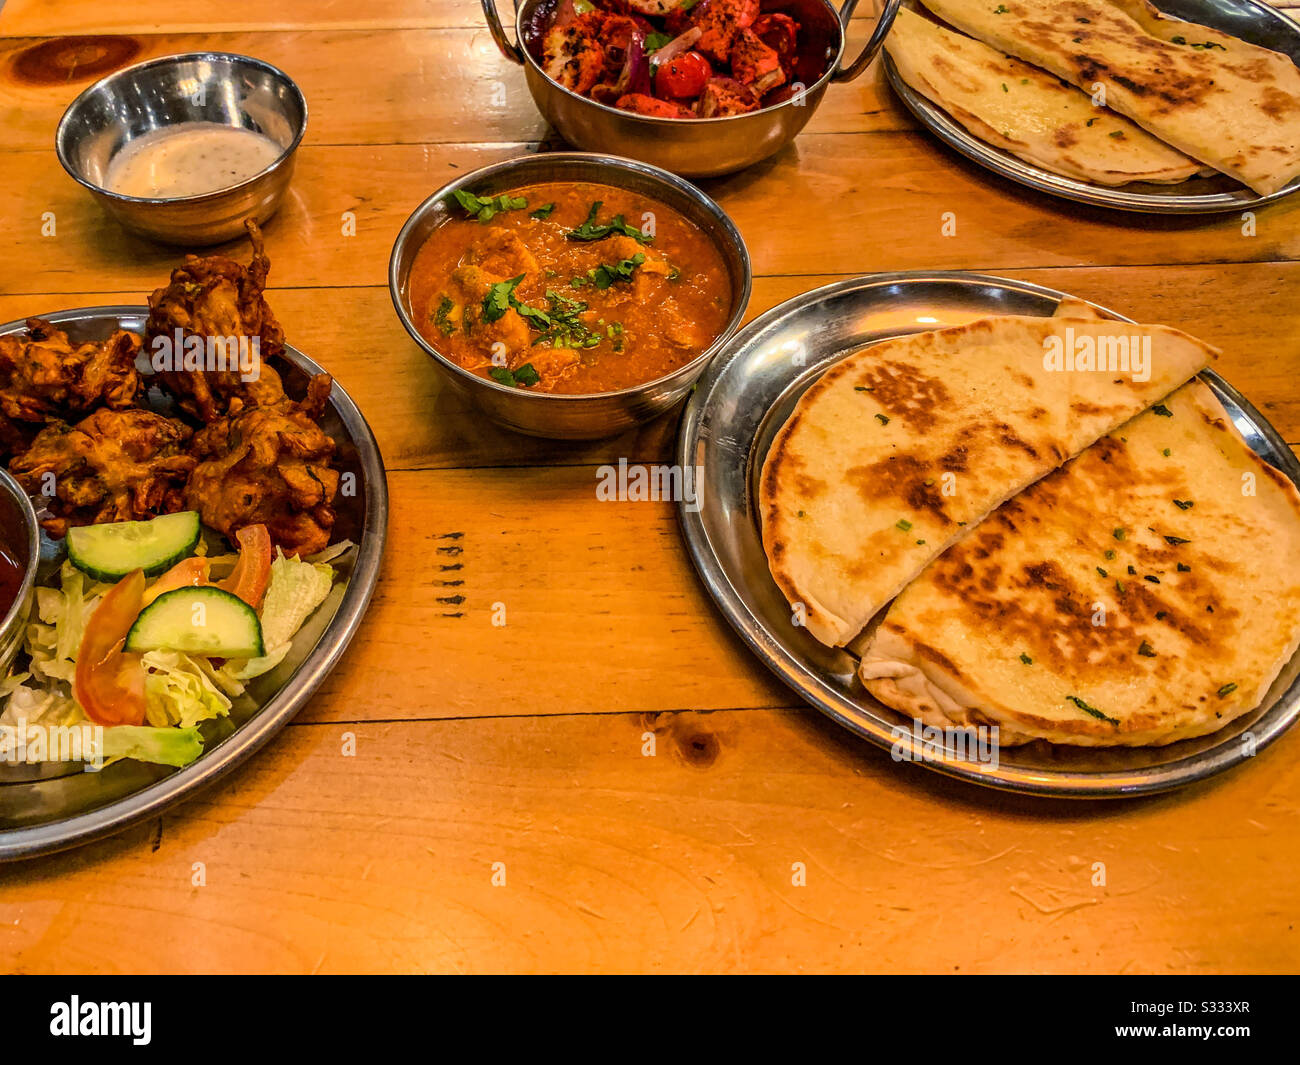 Selezione di cibo indiano ristorante in ciotole tra cui pollo tikka masala naan pane riso e patatine fritte Foto Stock